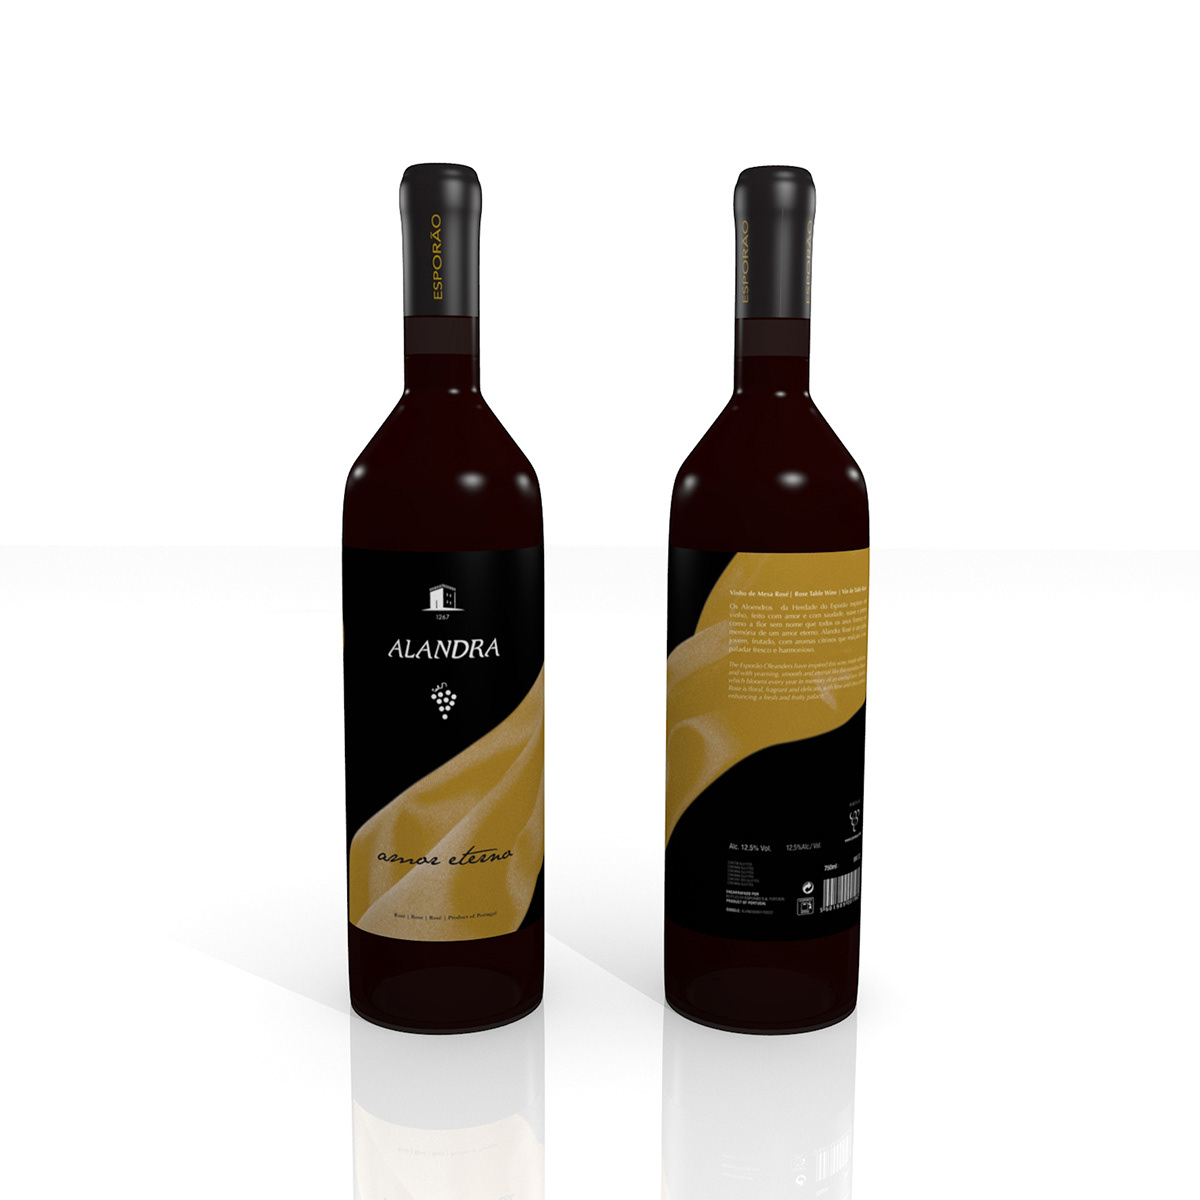 Alandra wine labels herdade do esporão